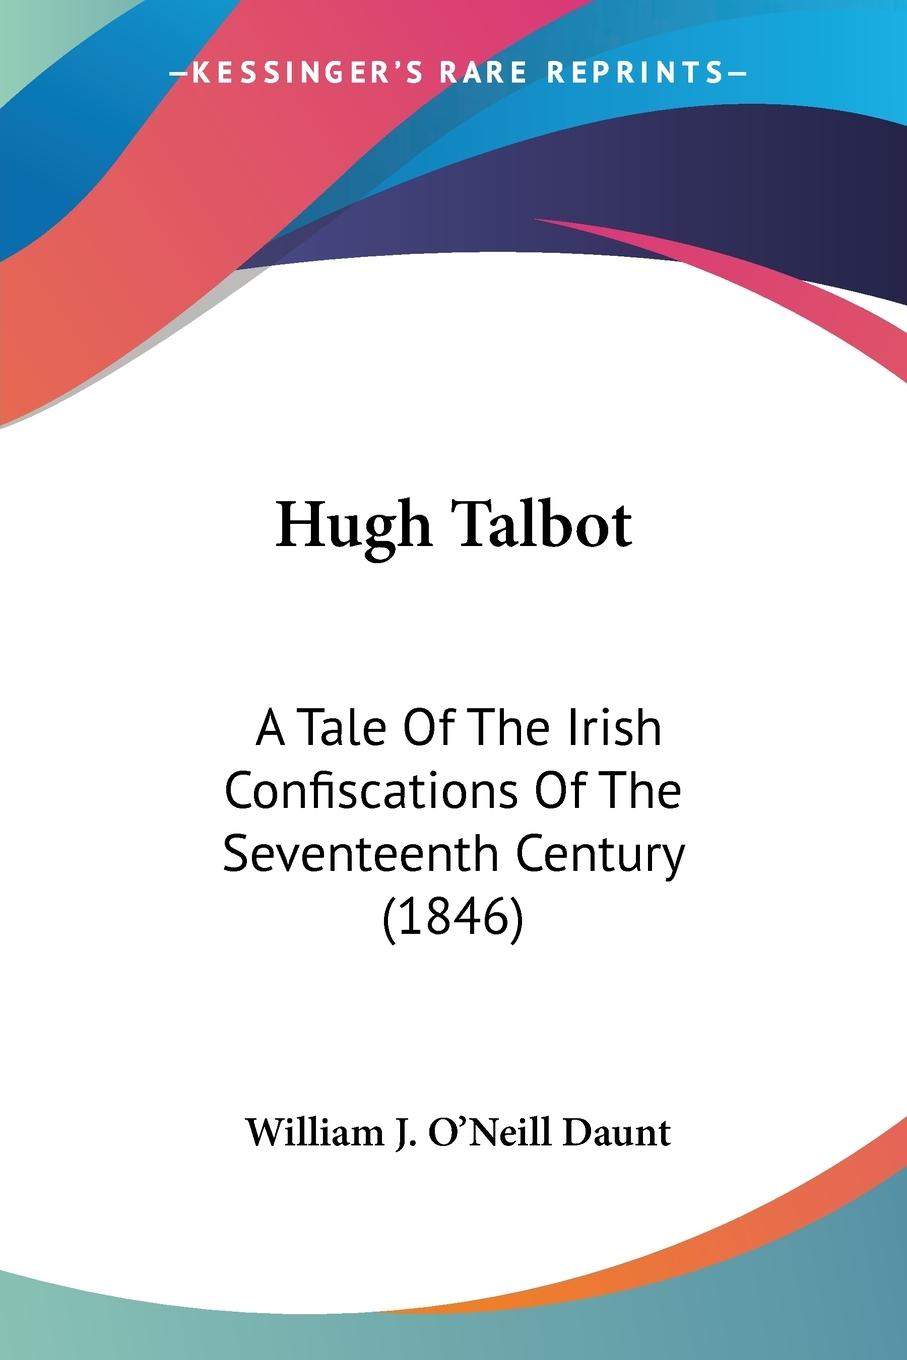 Hugh Talbot - Daunt, William J. O Neill